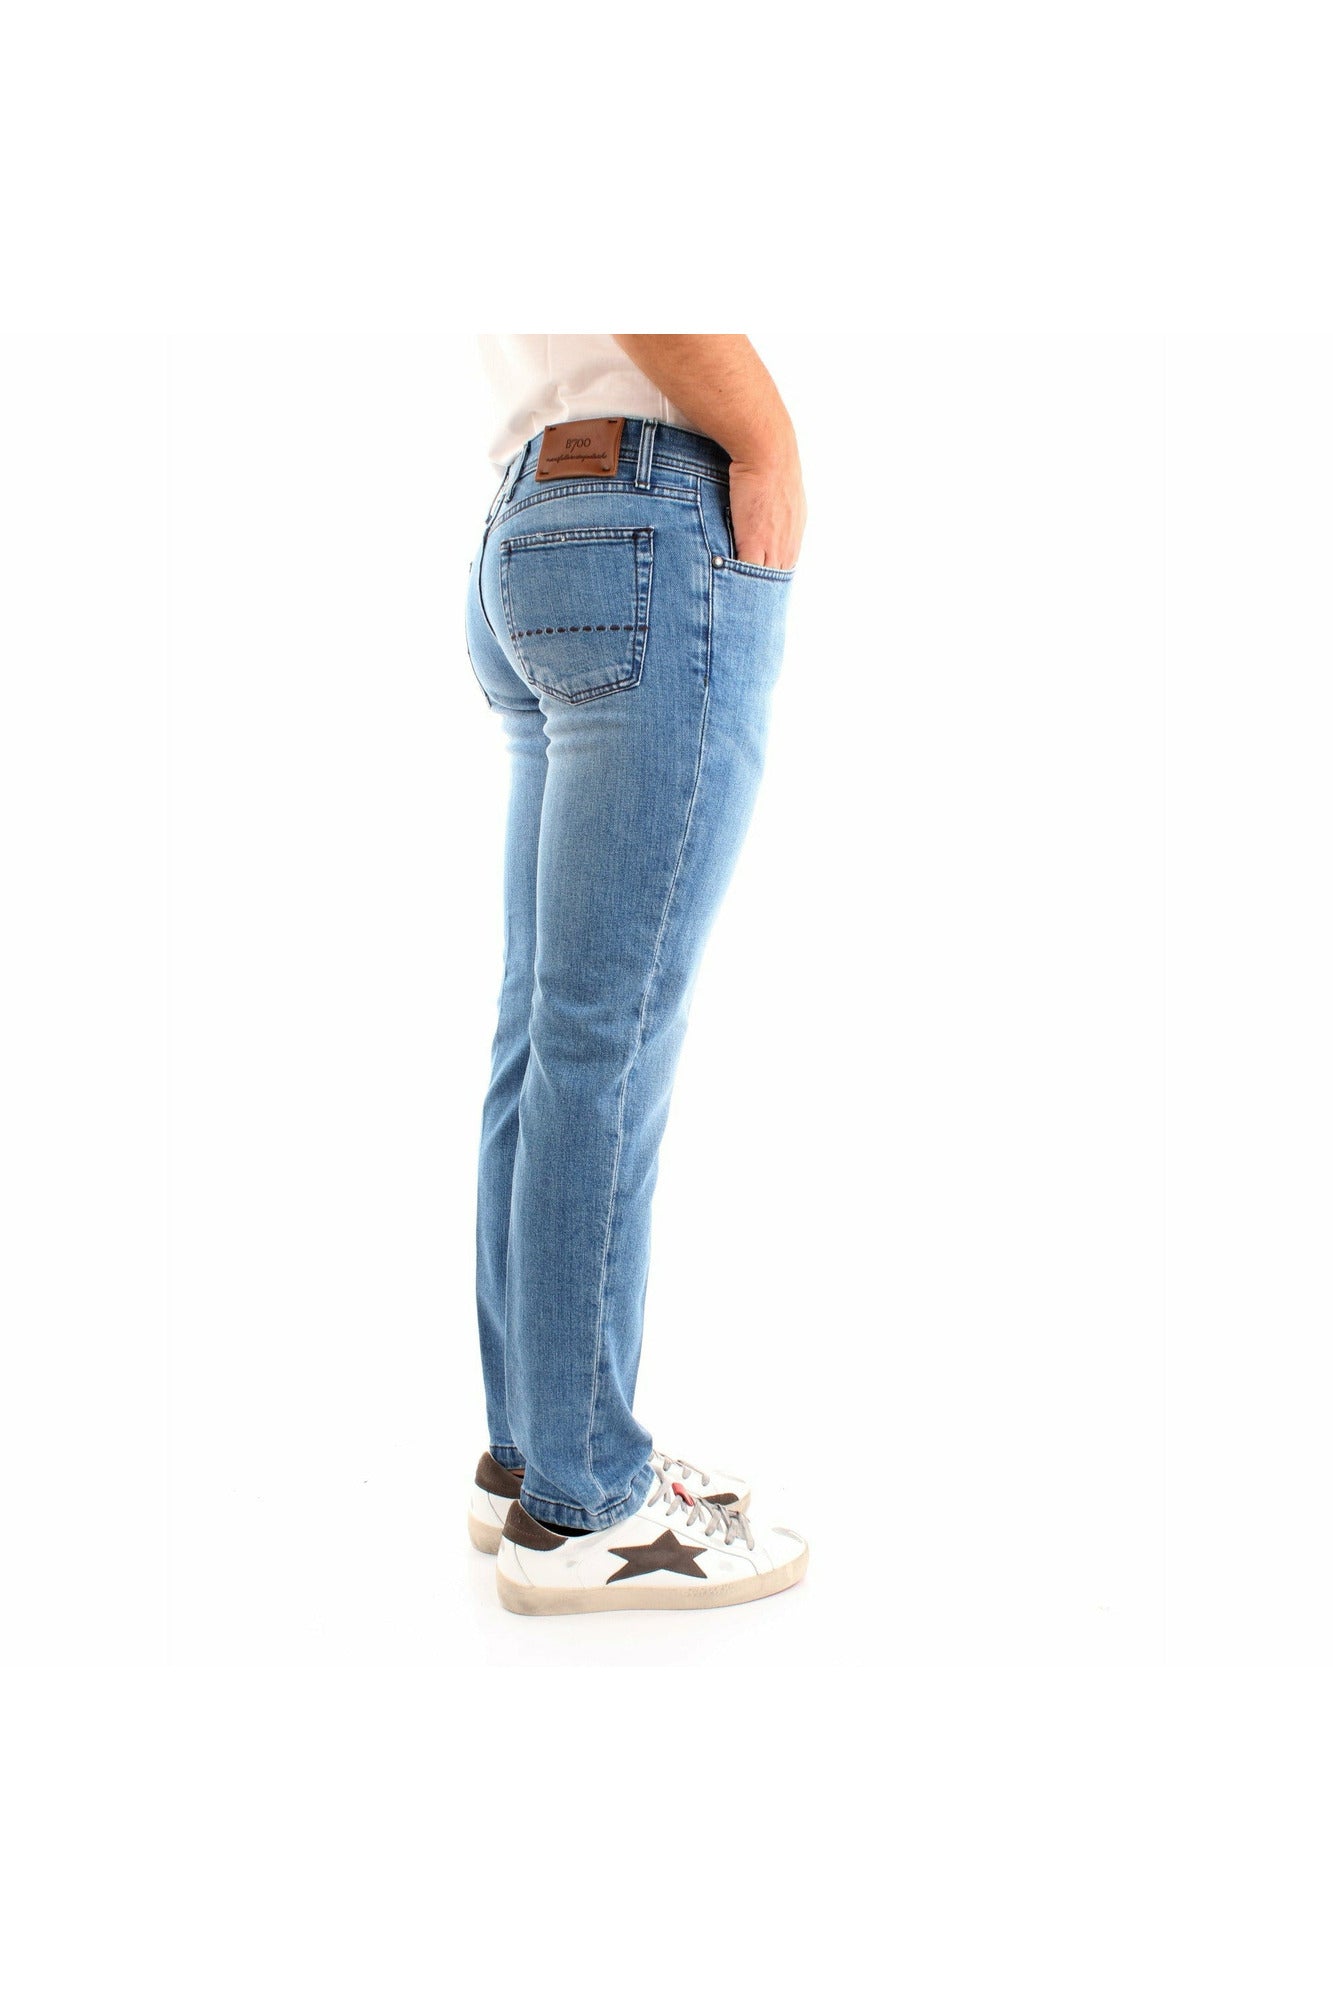 BSETTECENTO L702-2035AI21204 jeans slim fit modello cinque tasche